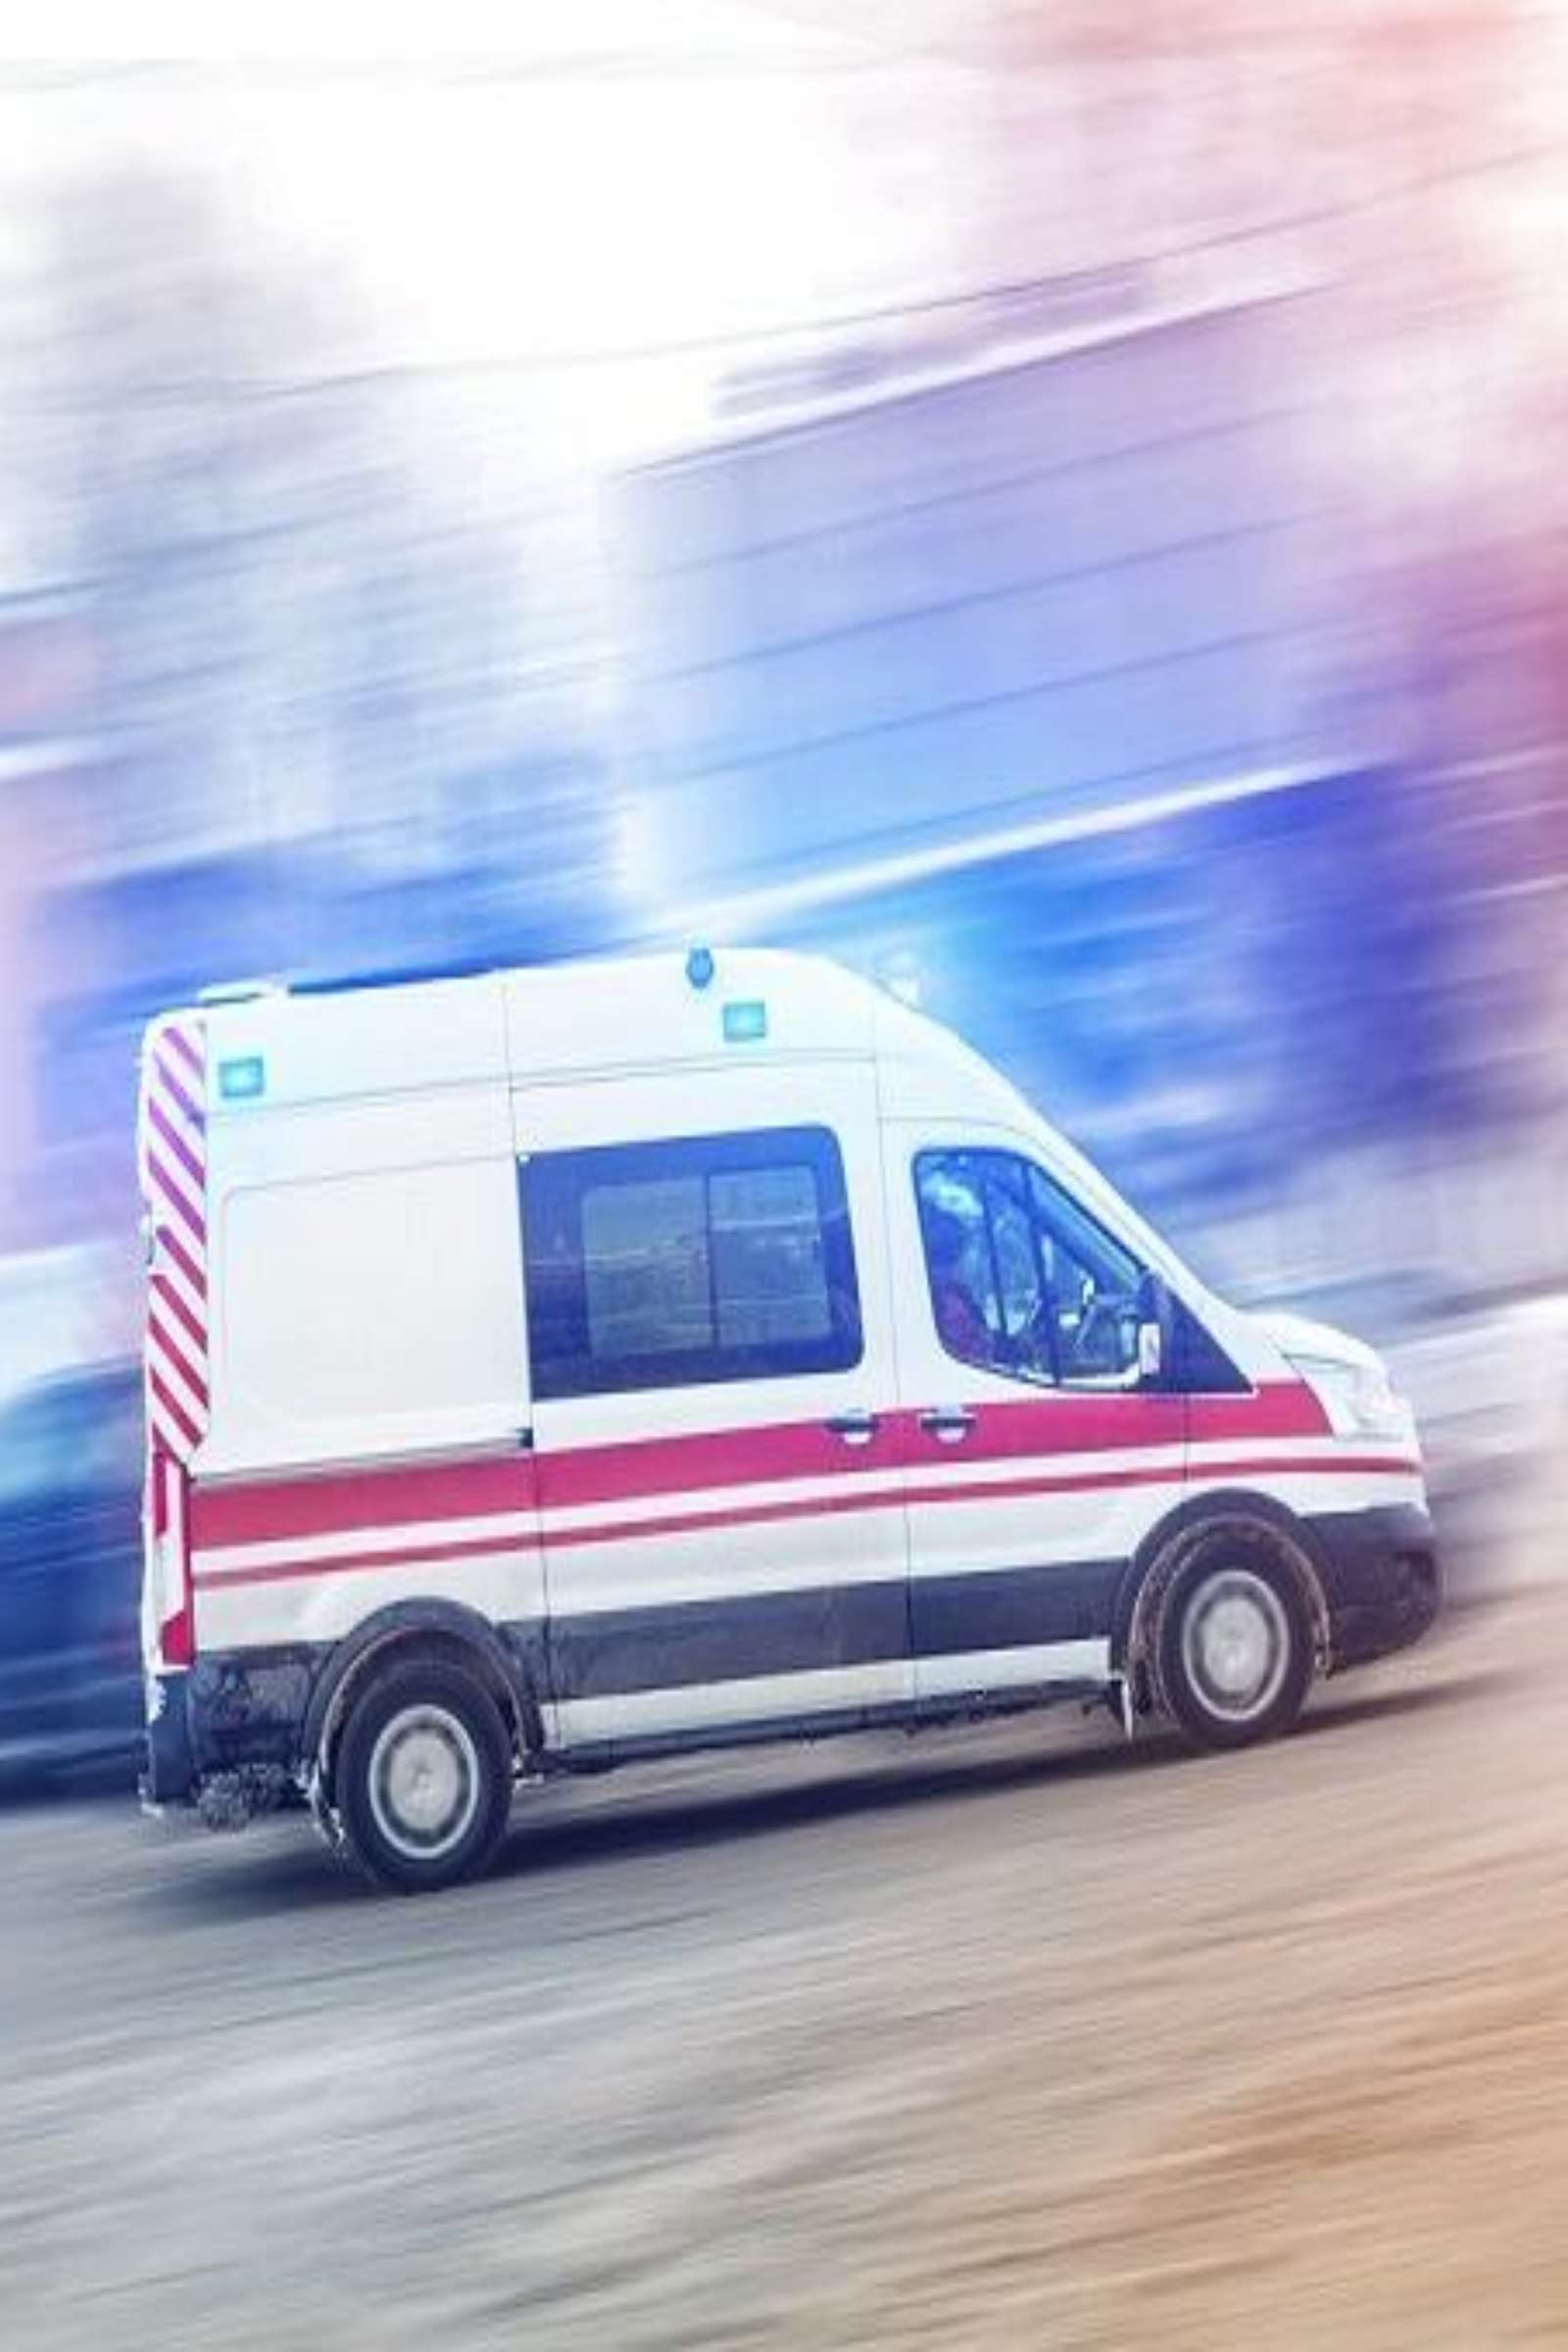 Cagliari operaio morto incidente officina